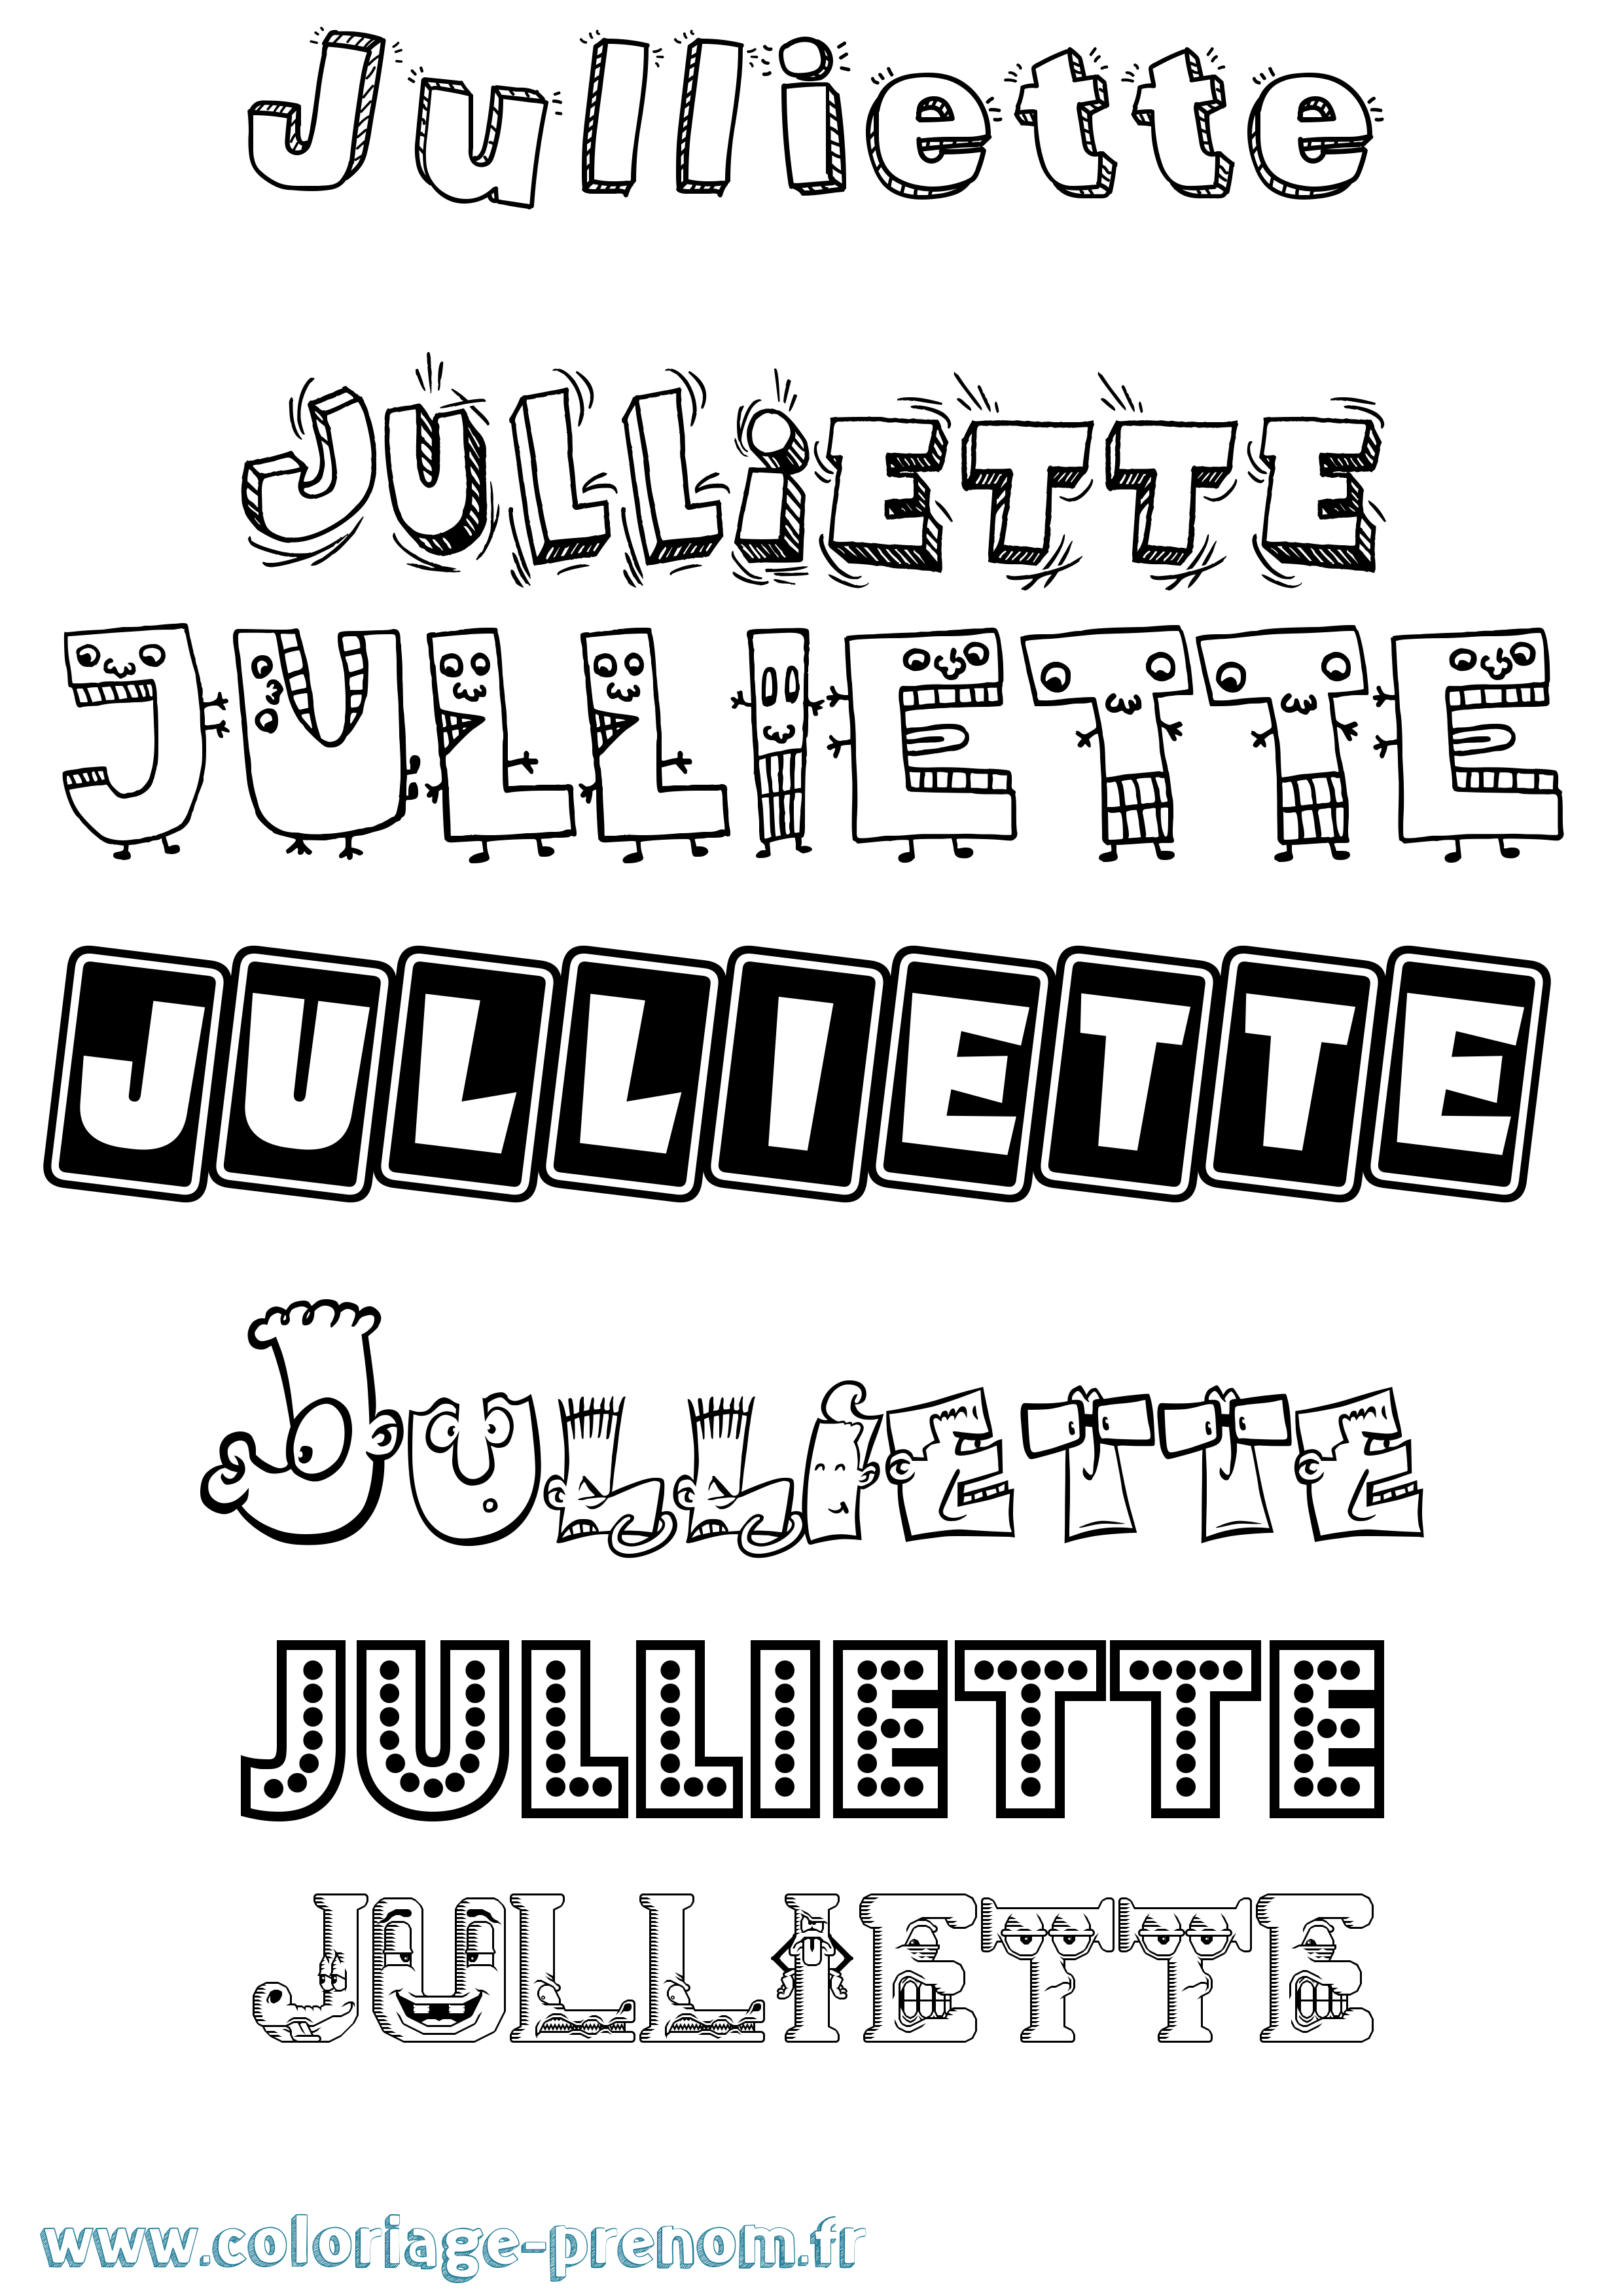 Coloriage prénom Julliette Fun